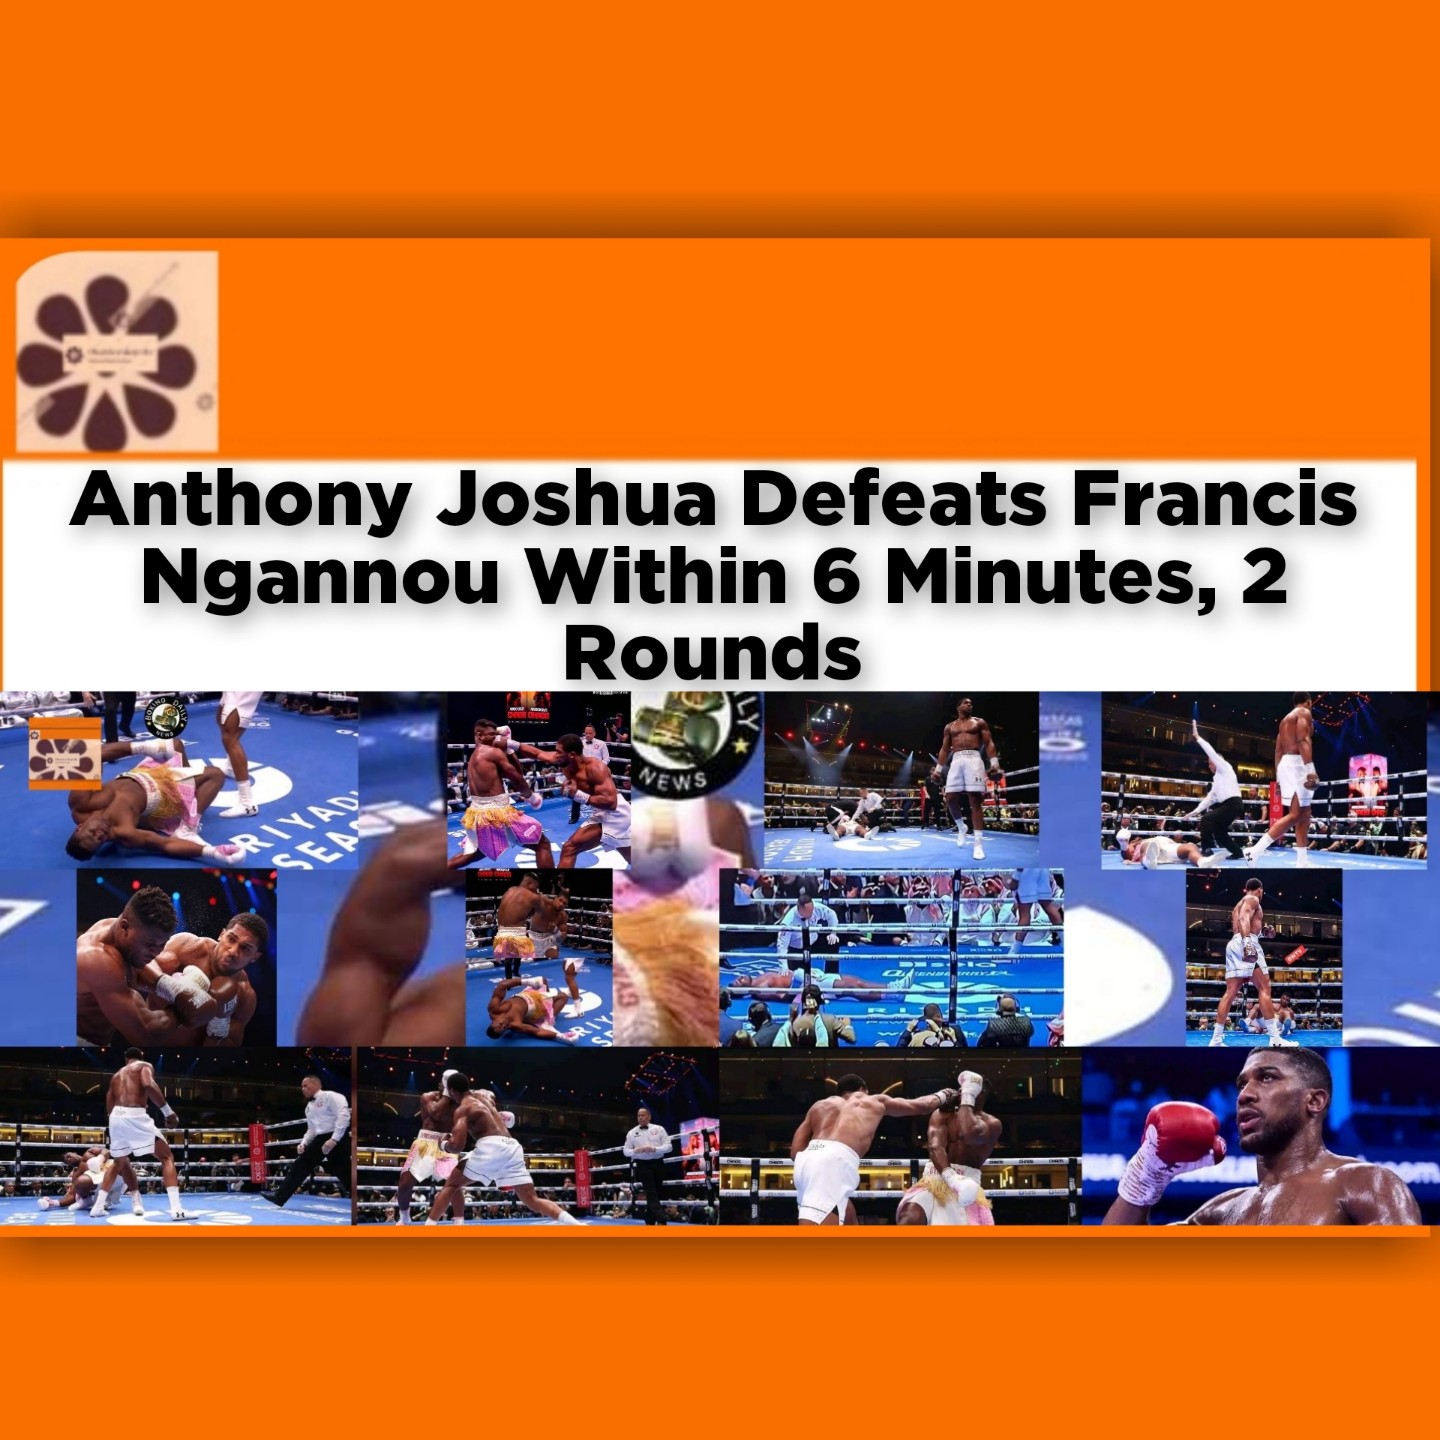 Anthony Joshua Defeats Francis Ngannou Within 6 Minutes, 2 Rounds ~ OsazuwaAkonedo #SaudiArabia #AnthonyJoshua #Boxing #Cameroon #champion #DAZN #francisngannou #Nigeria #Riyadh #Sports #UFC